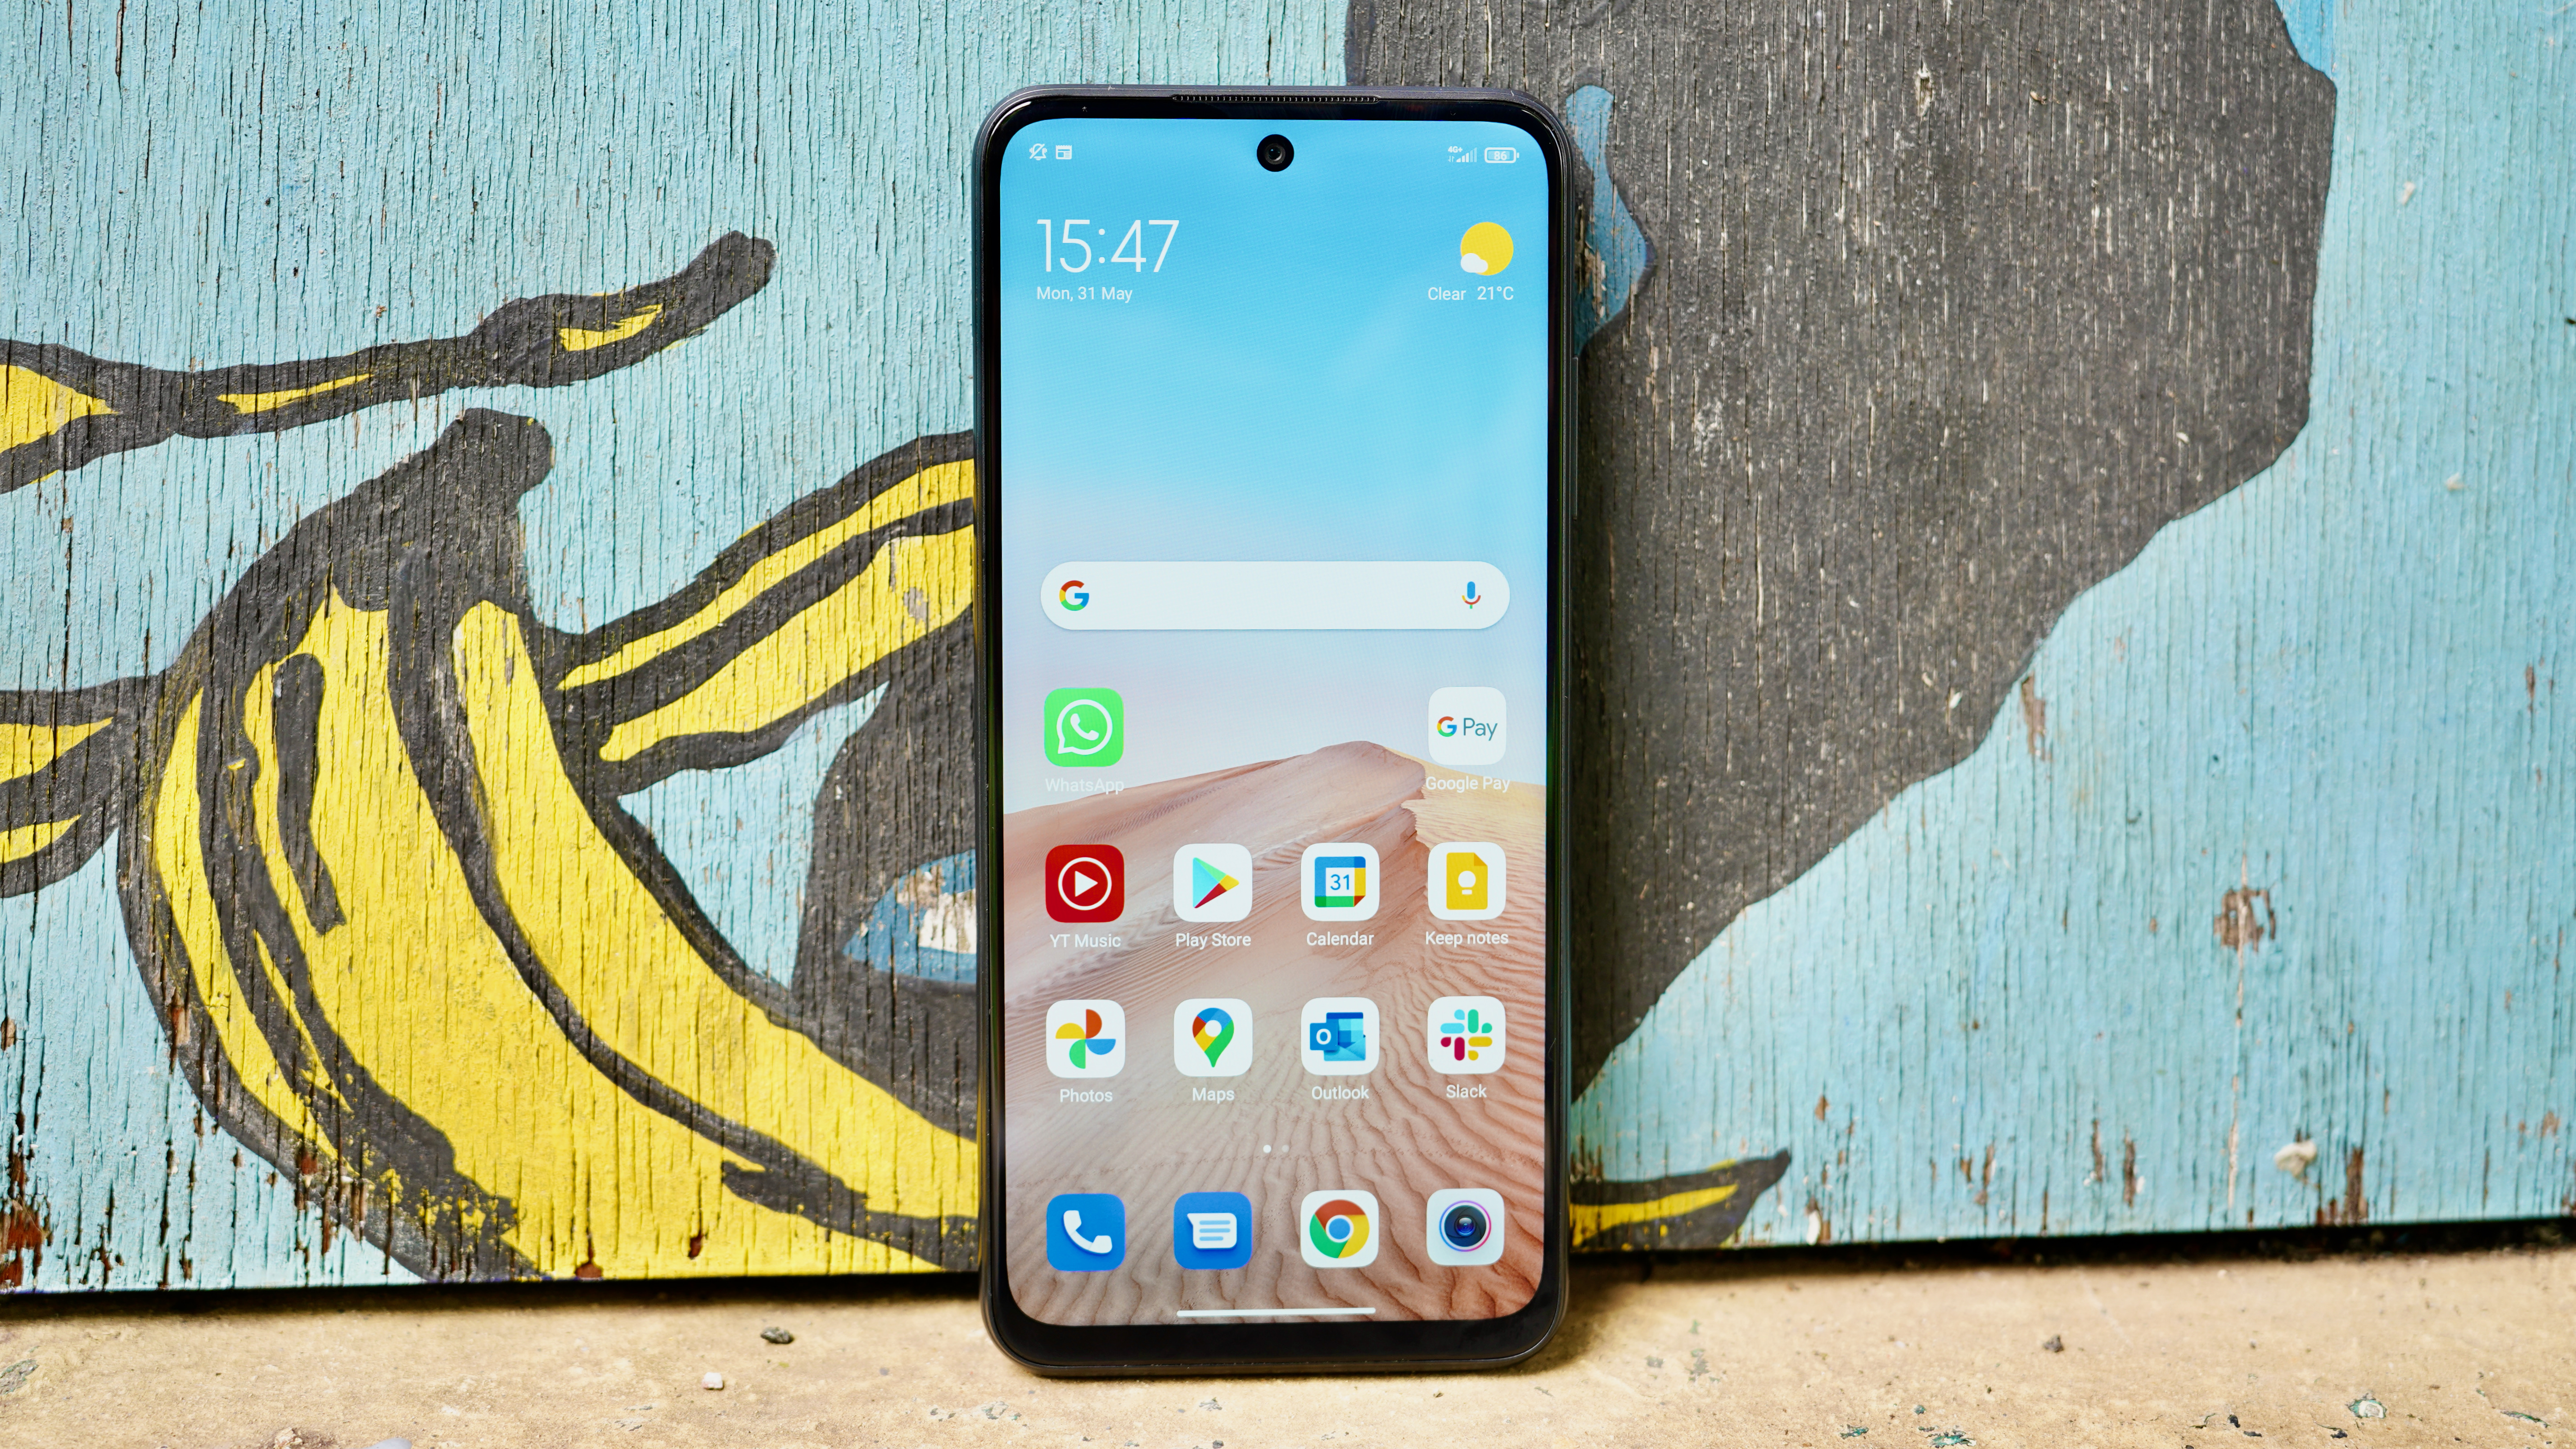 Xiaomi Redmi Note 10 5G